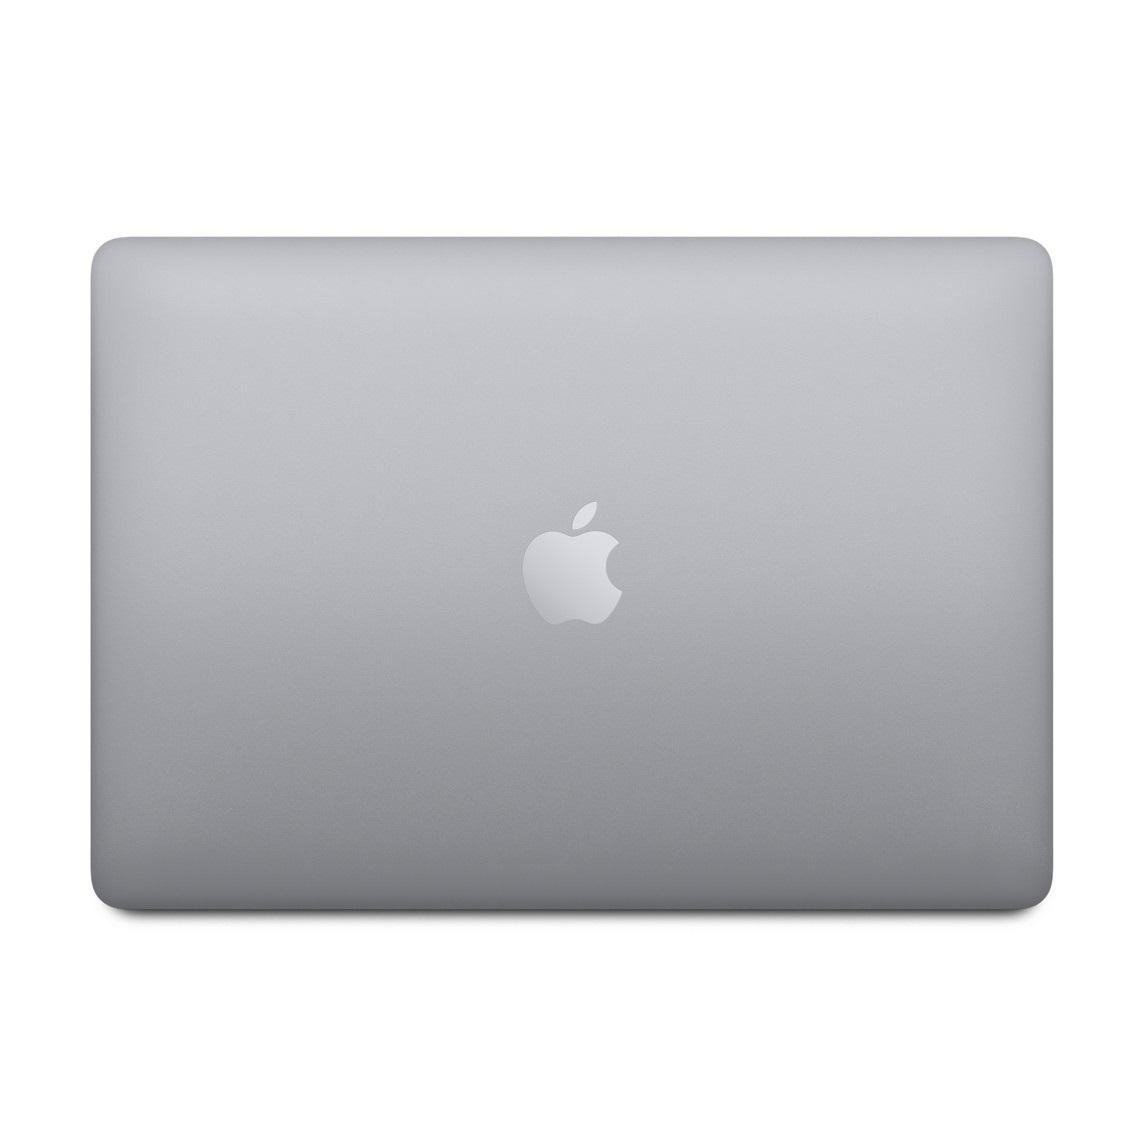  مک بوک پرو a1502 - لپ تاپ مک بوک پرو 13 اینچی 2015 | لاکچری لپ تاپ 